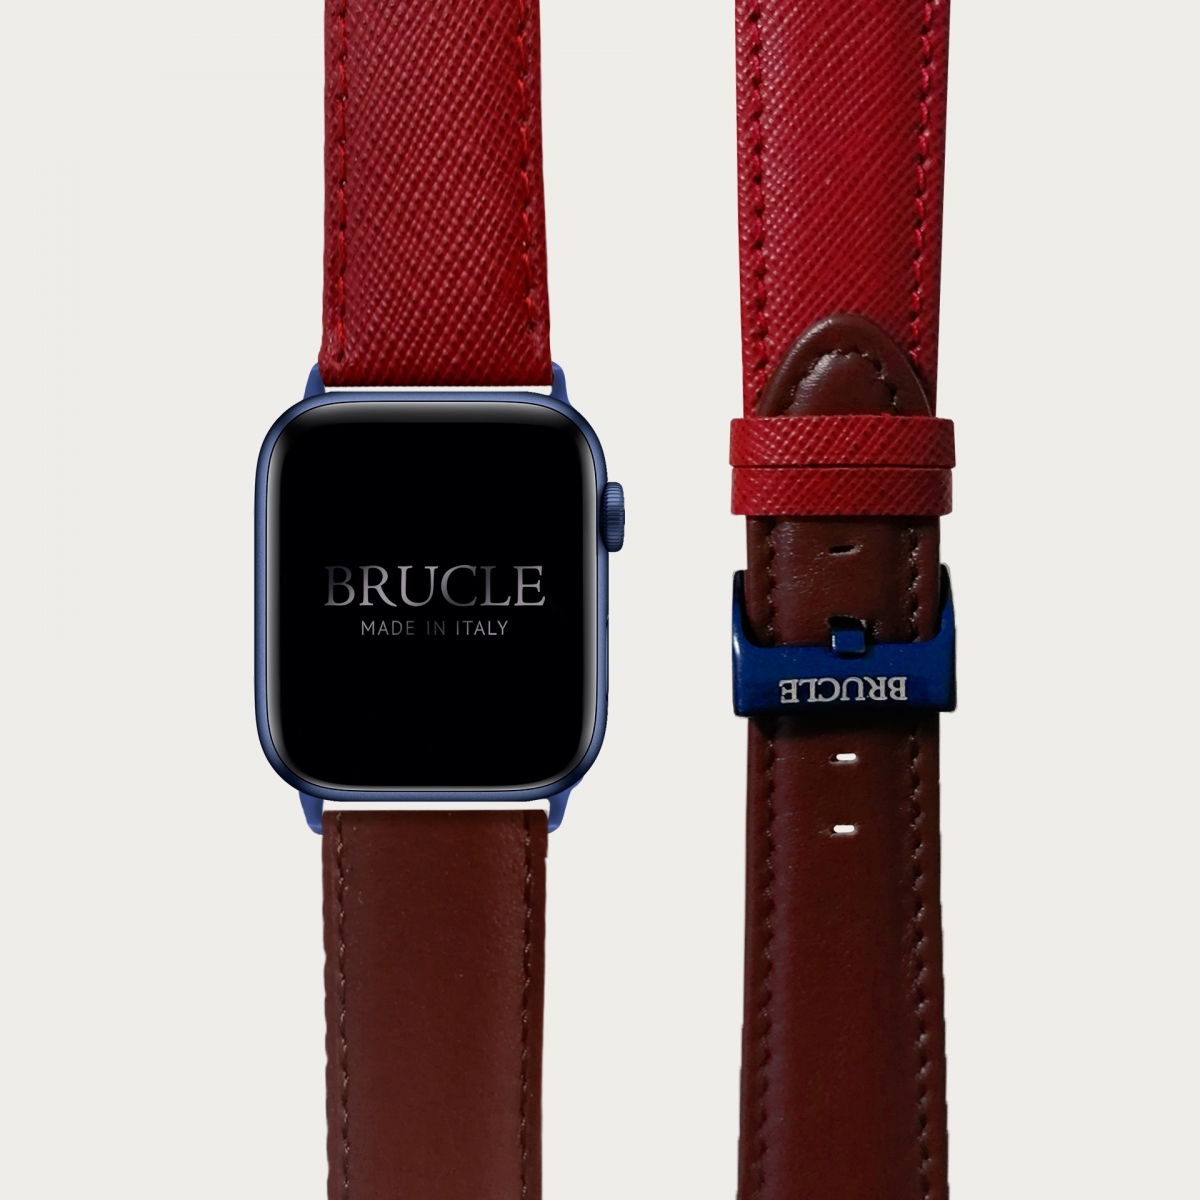 BRUCLE Correa de reloj compatible con Apple Watch / Samsung smartwatch, estampado rojo y marrón